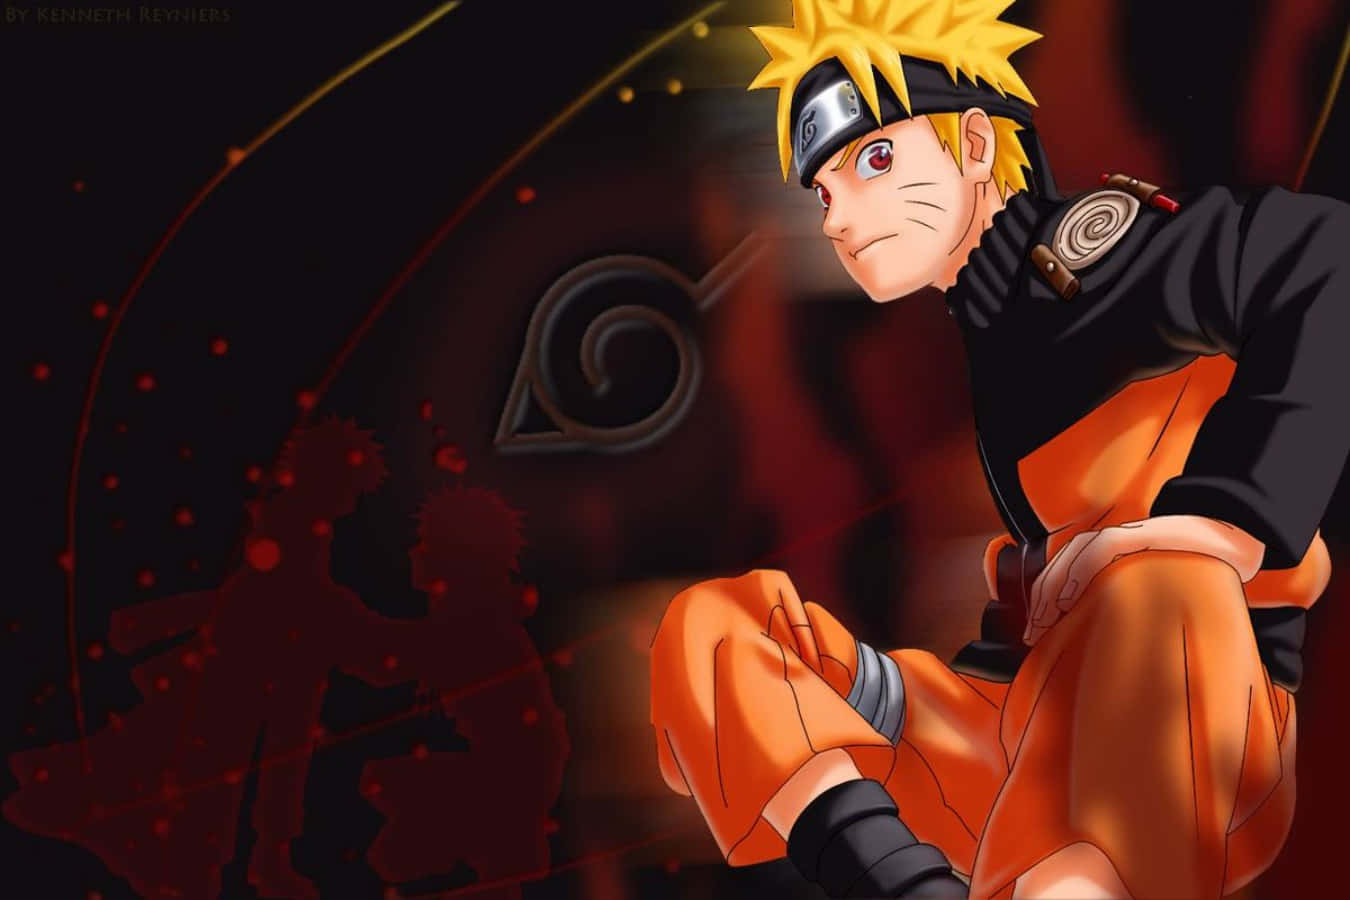 Imágenesgeniales De Naruto.